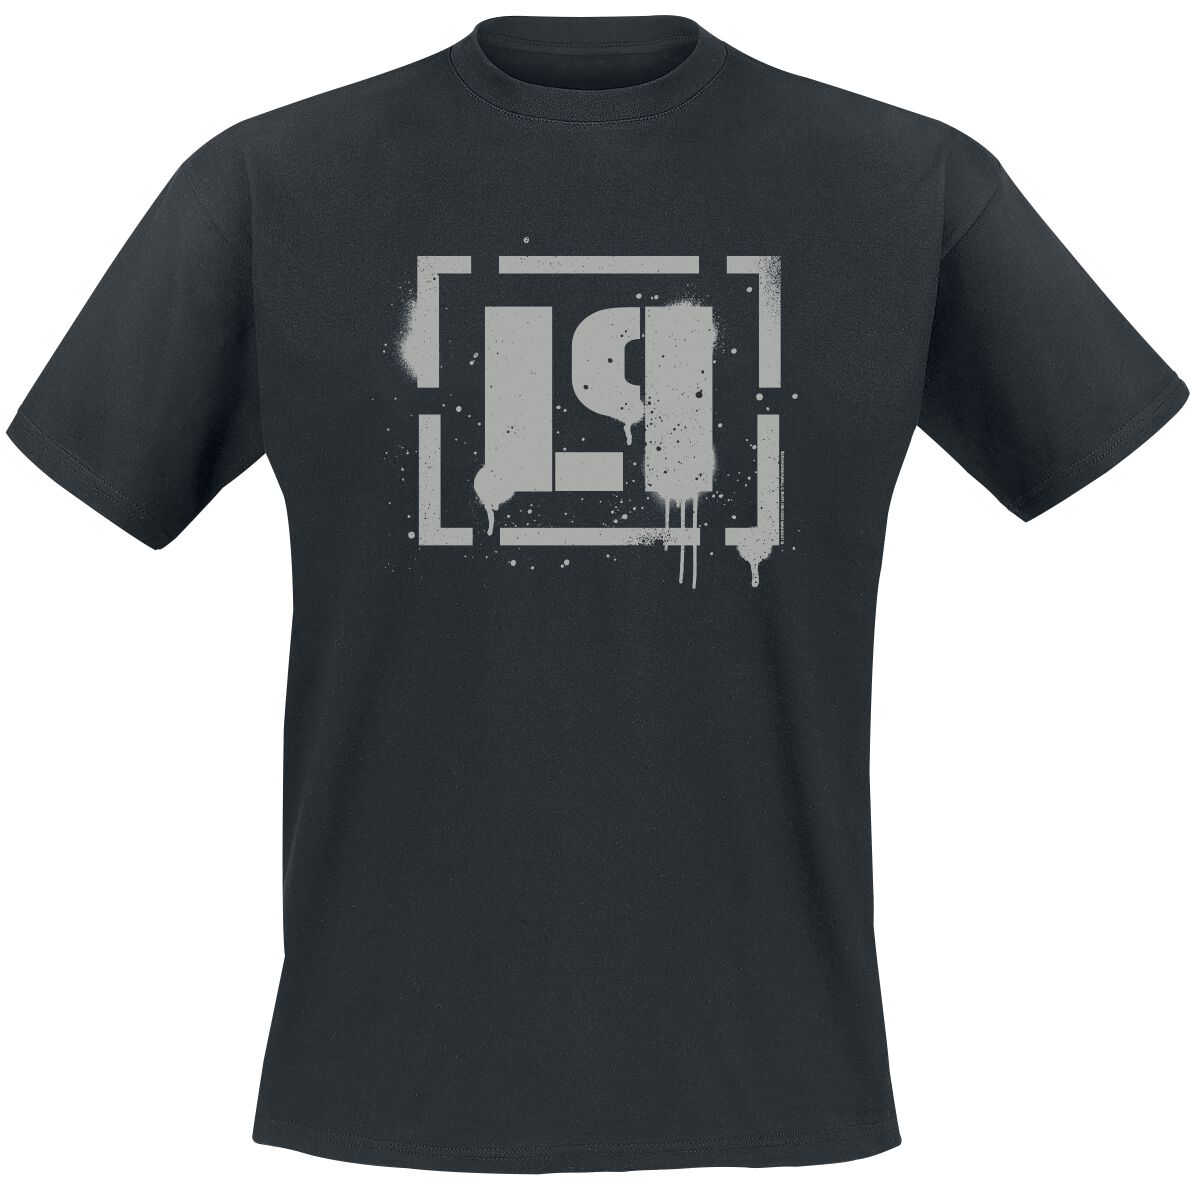 Linkin Park T-Shirt - Meteora Bracket Spray Logo - S bis 4XL - für Männer - Größe M - schwarz  - Lizenziertes Merchandise!